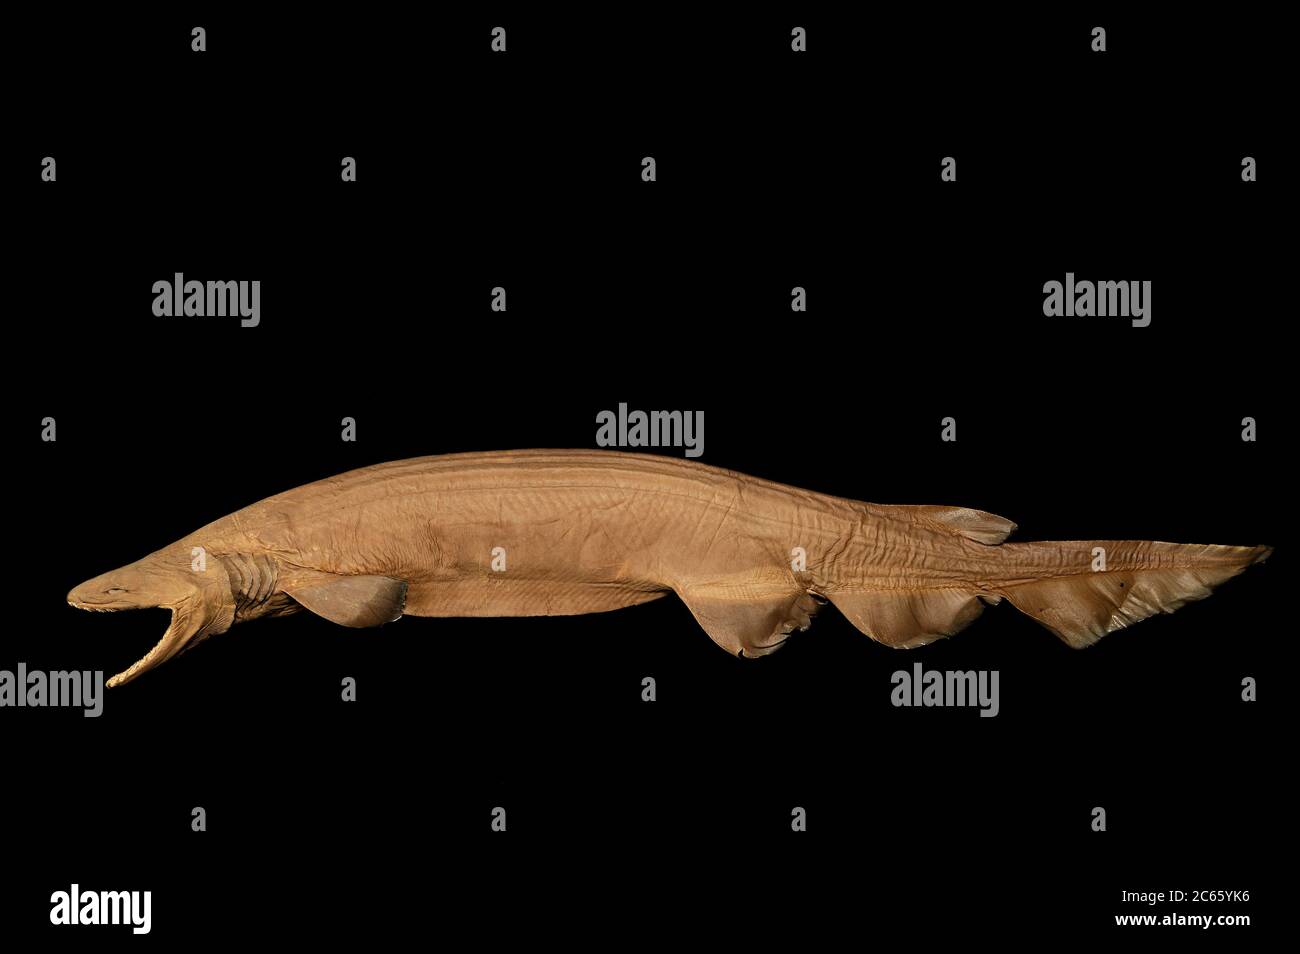 Requin volant (Chlamydoselachus anguineus) la photo a été prise en collaboration avec l'Université du Musée zoologique de Hambourg Banque D'Images